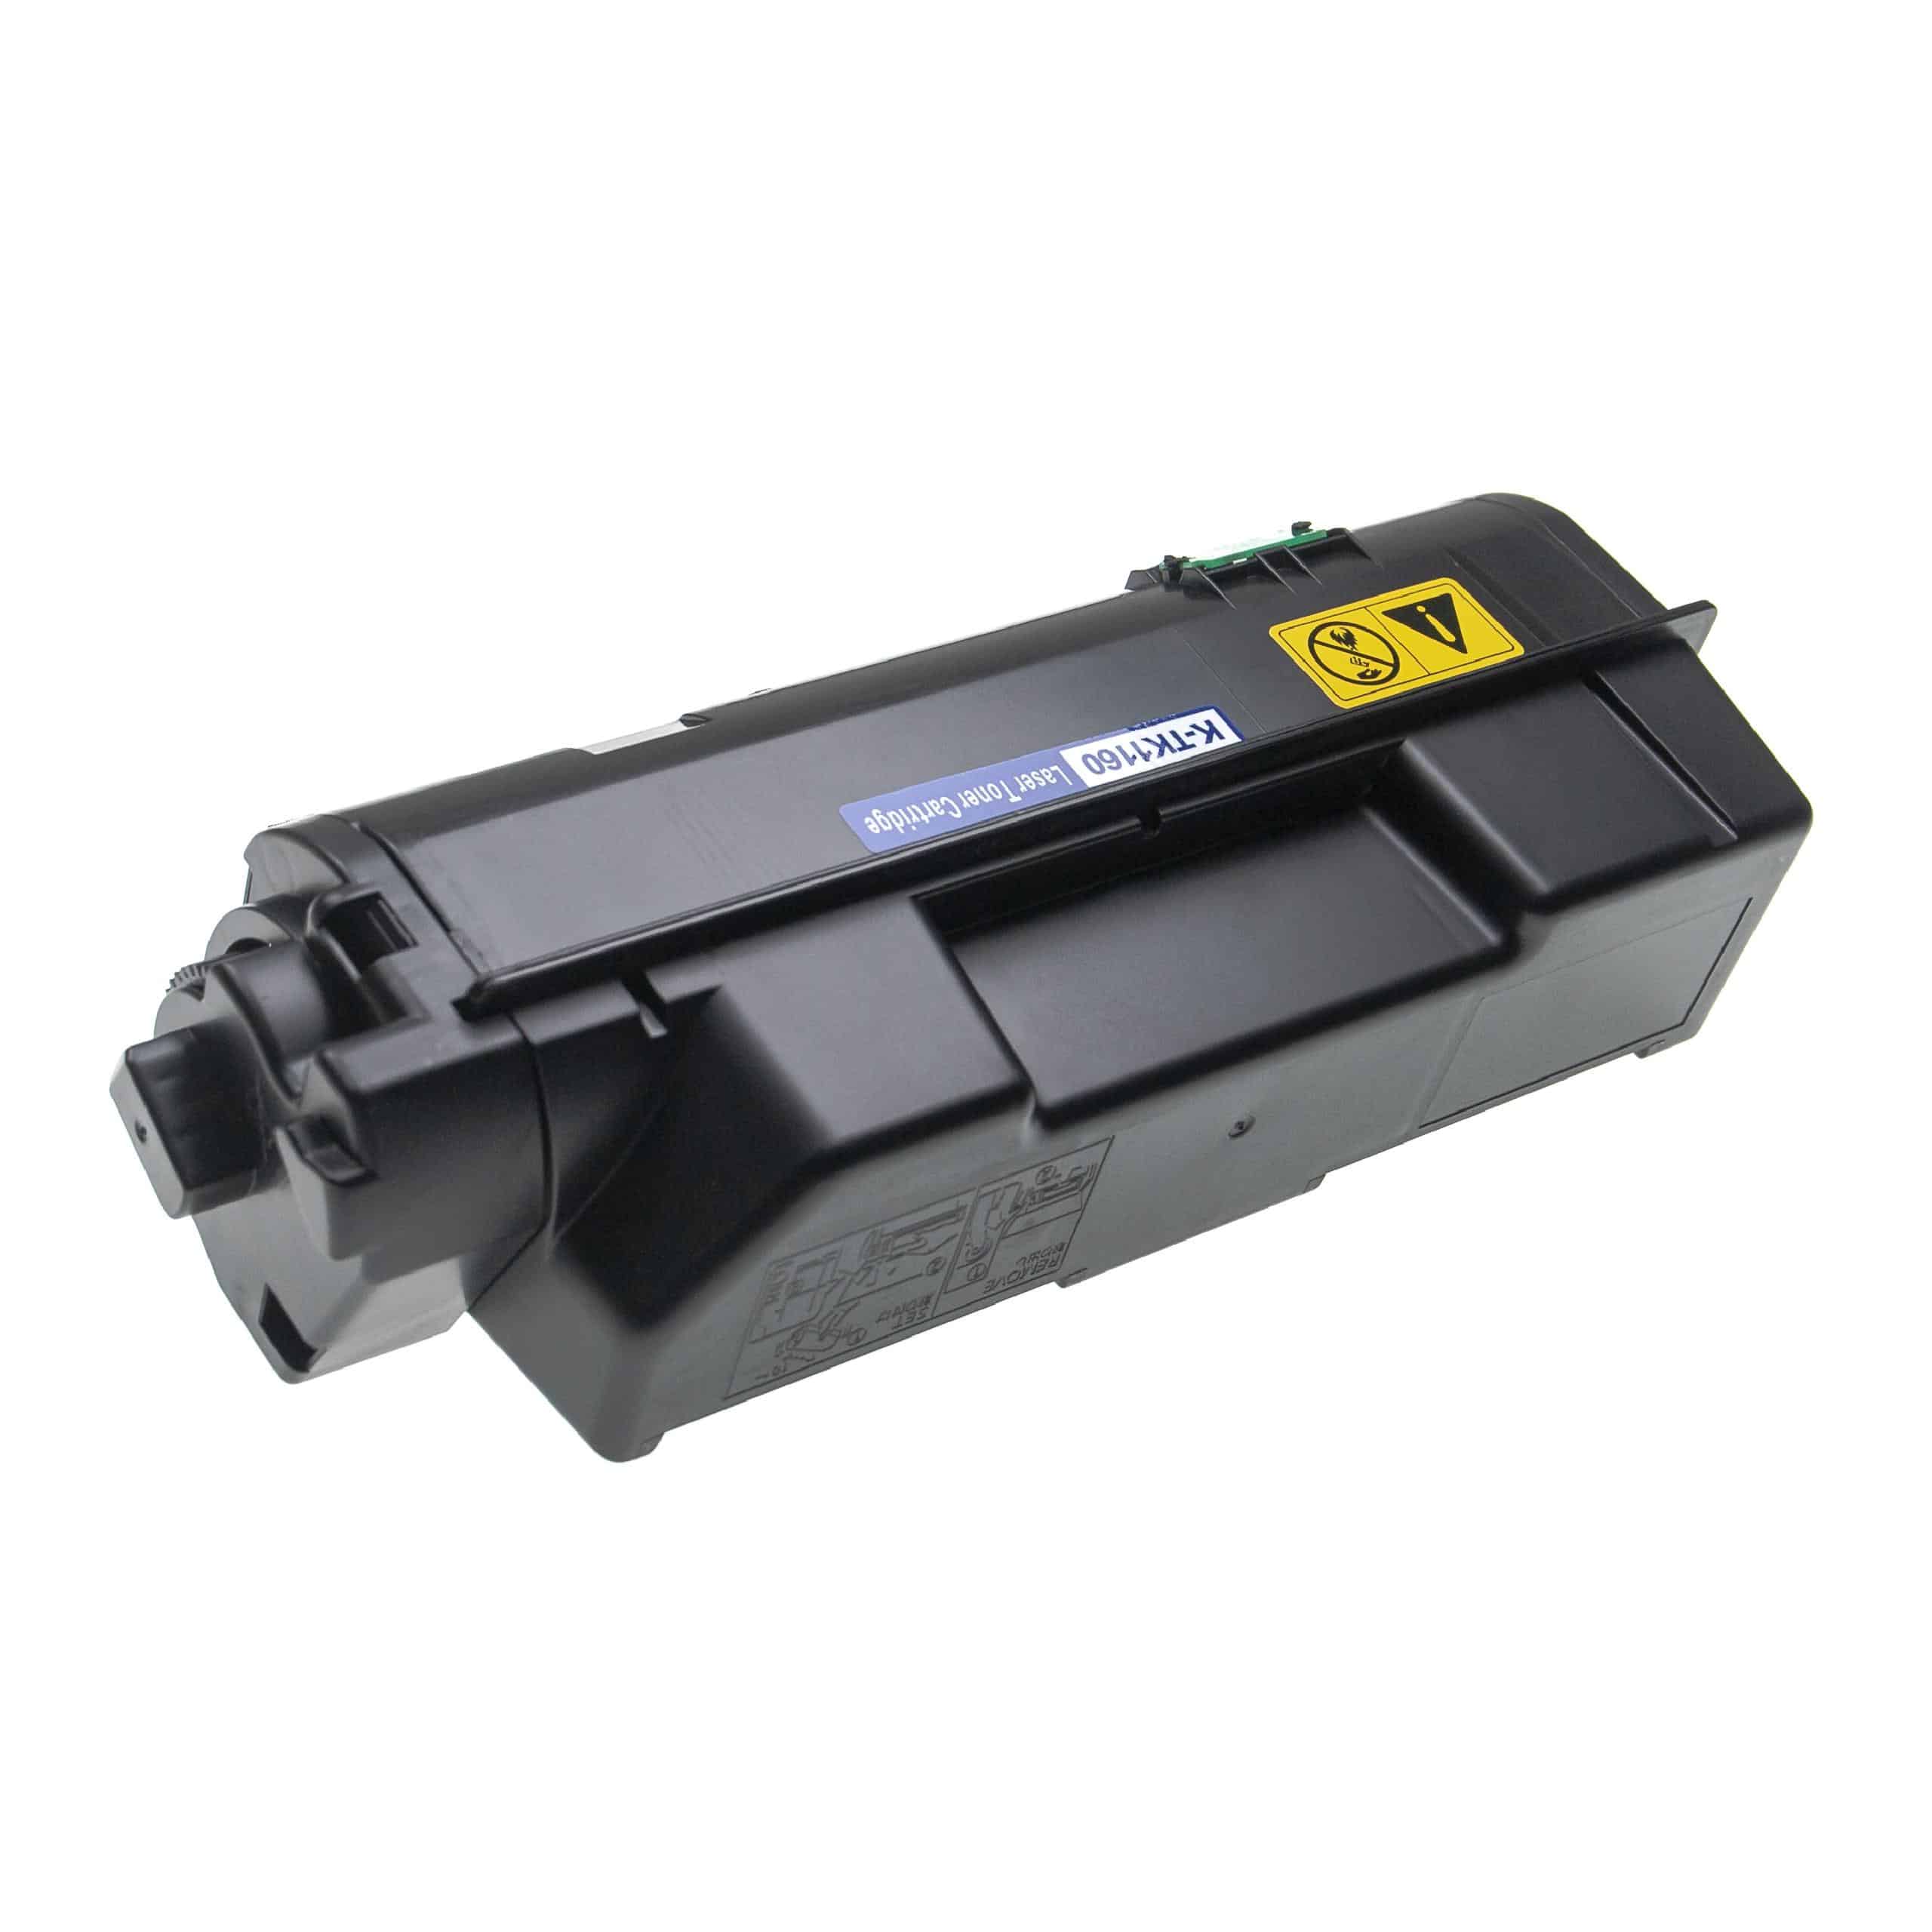 5x Cartouches de toner remplace Kyocera TK-1160 pour imprimante laser Kyocera, noir